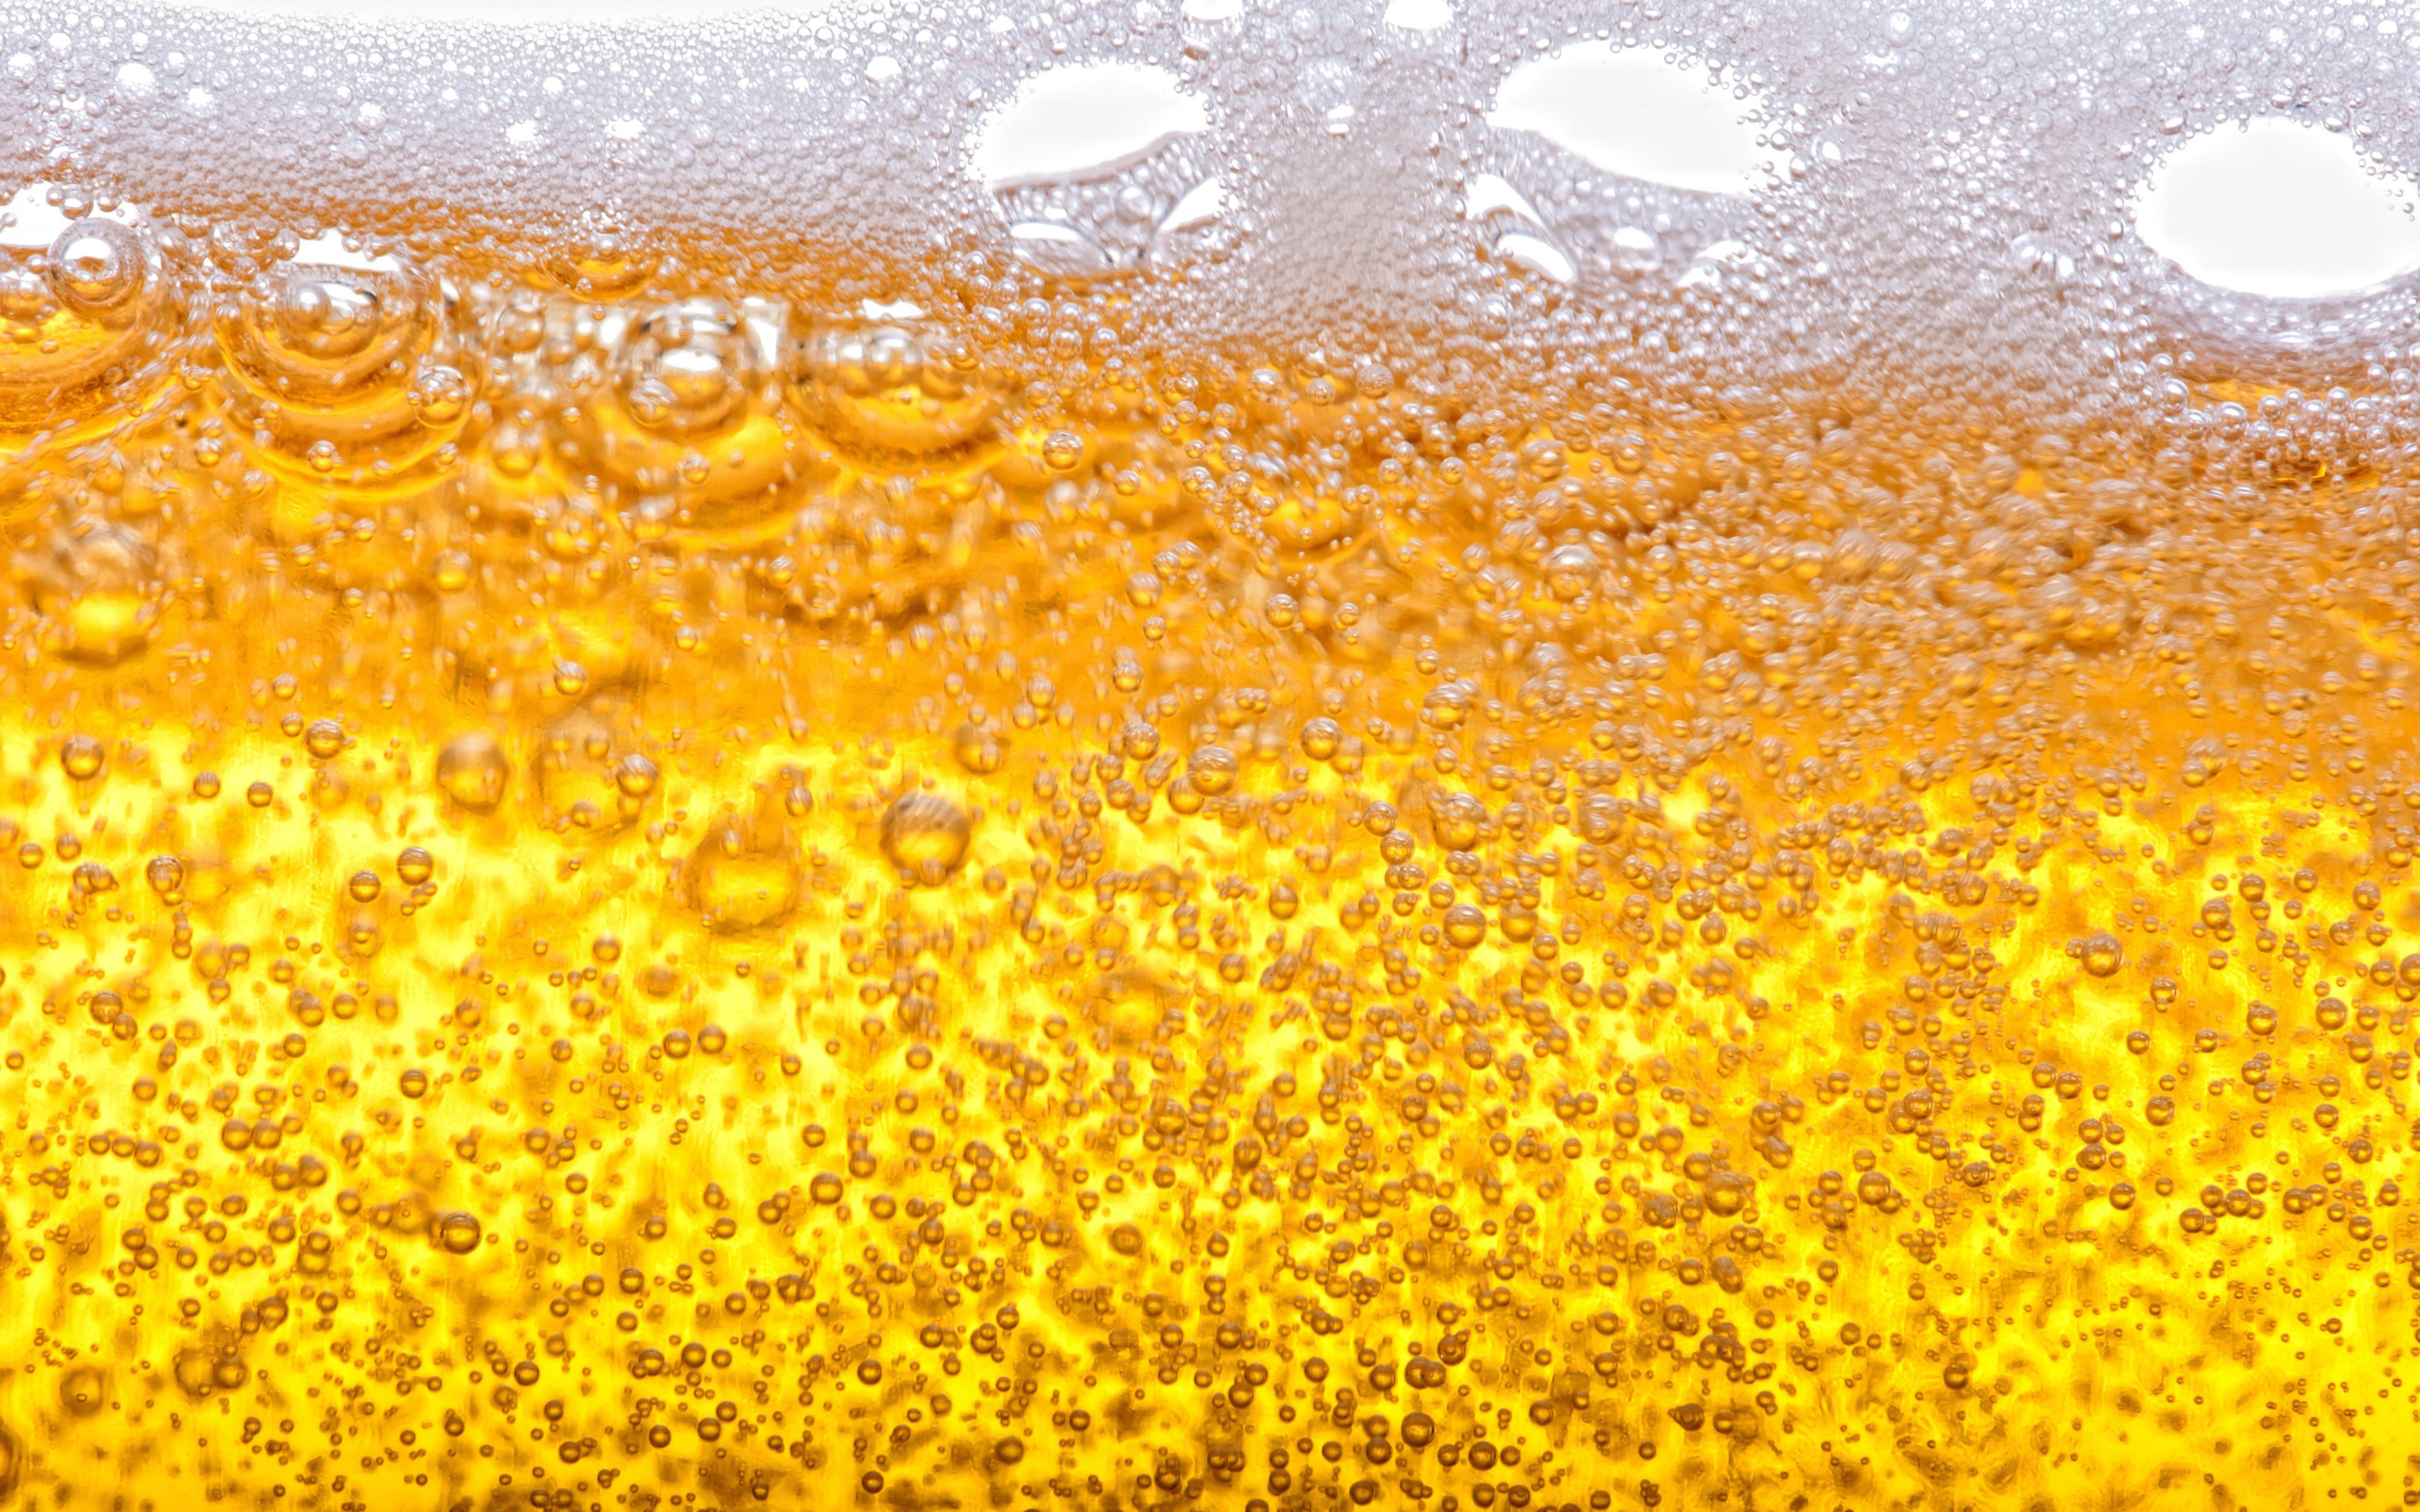 Best 20 Beer Images  Download Free Images on Unsplash